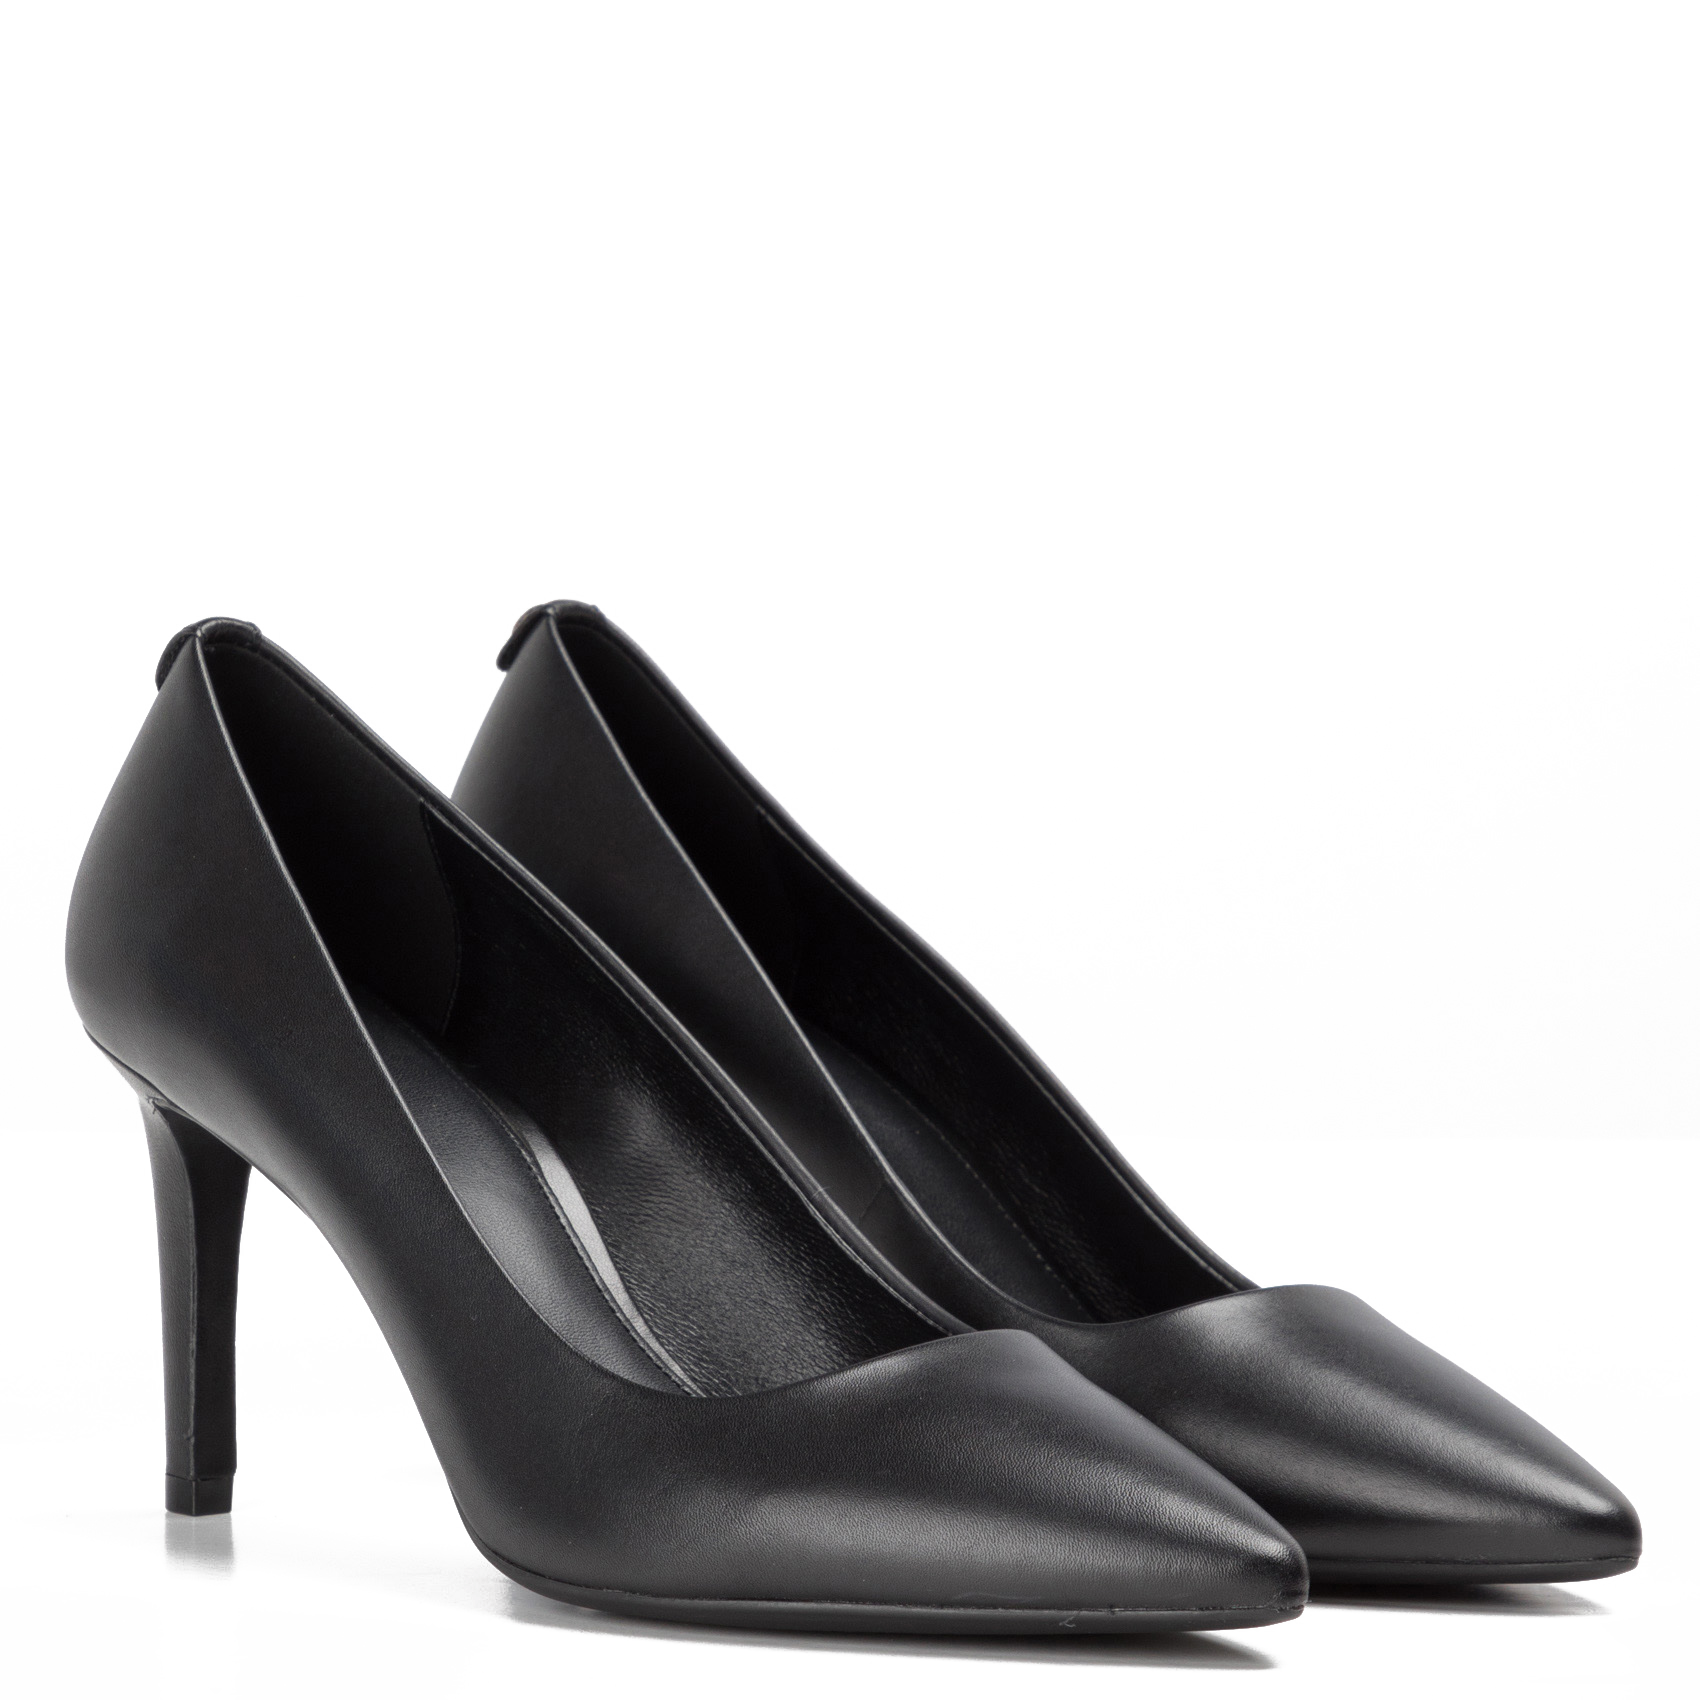 Mujer Zapatos de Tacones de Stilettos y tacones altos Zapatos de salón Michael Kors de Cuero de color Negro 